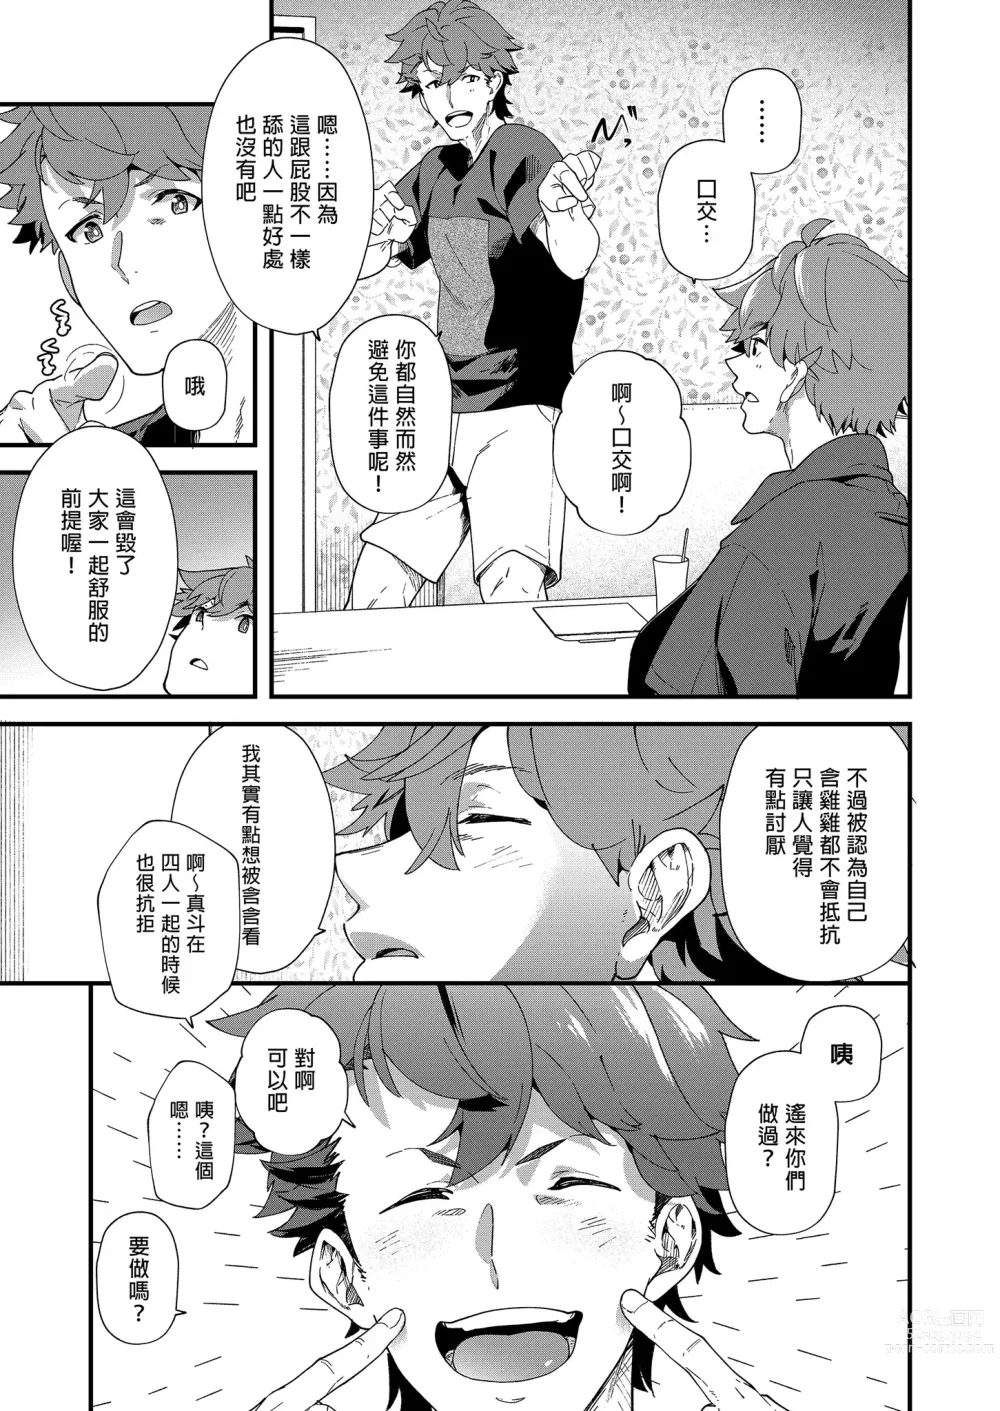 Page 10 of doujinshi 可攻可受 x 可攻可受 (decensored)